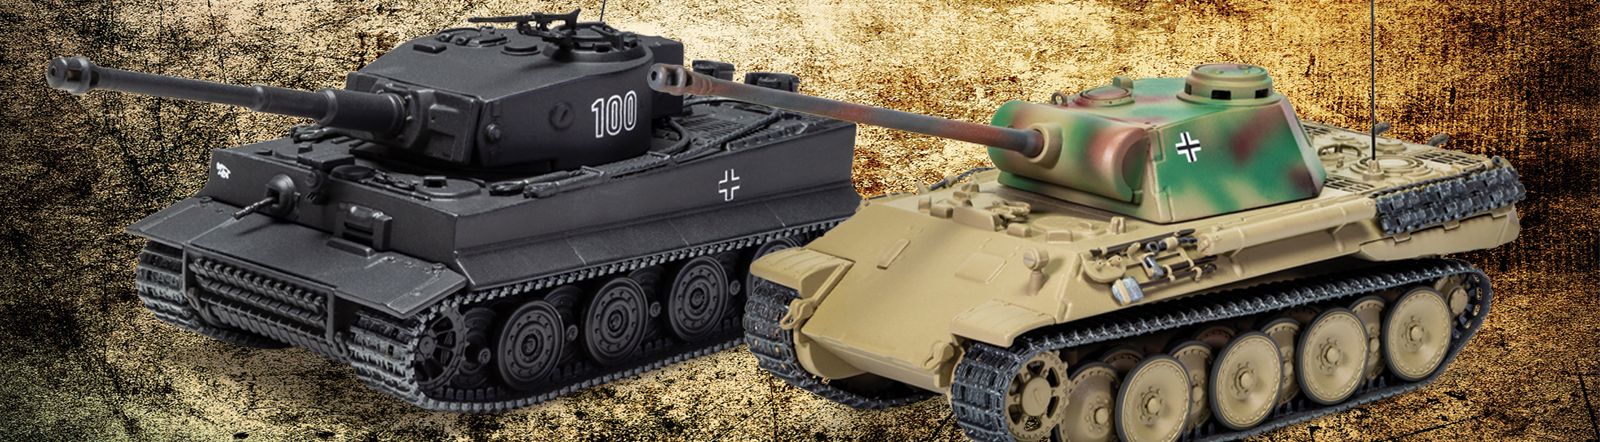 Ausf D Corgi 1/50 Panzerkampfwagen V Panther CC60215 